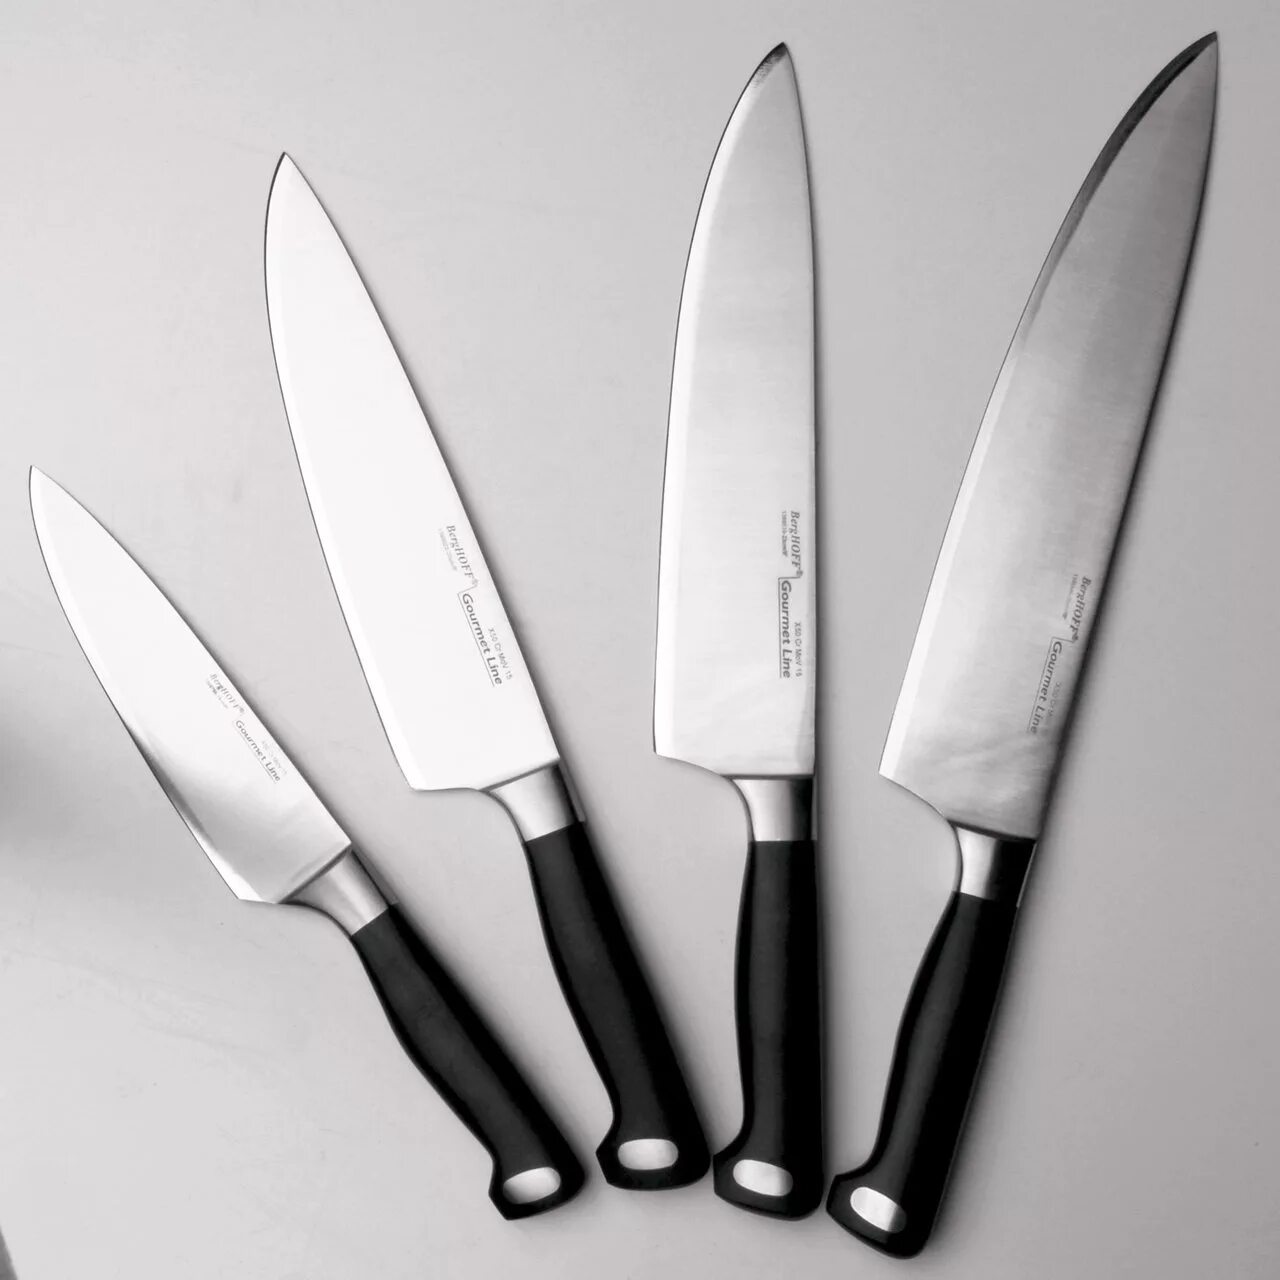 Нож поварской BERGHOFF Gourmet. Tojiro Julia Vysotskaya professional Pro Дамаск. Нож поварской "Gourmet", 20 см. BERGHOFF нож разделочный Gourmet 20 см. Кухонные ножи купить в спб